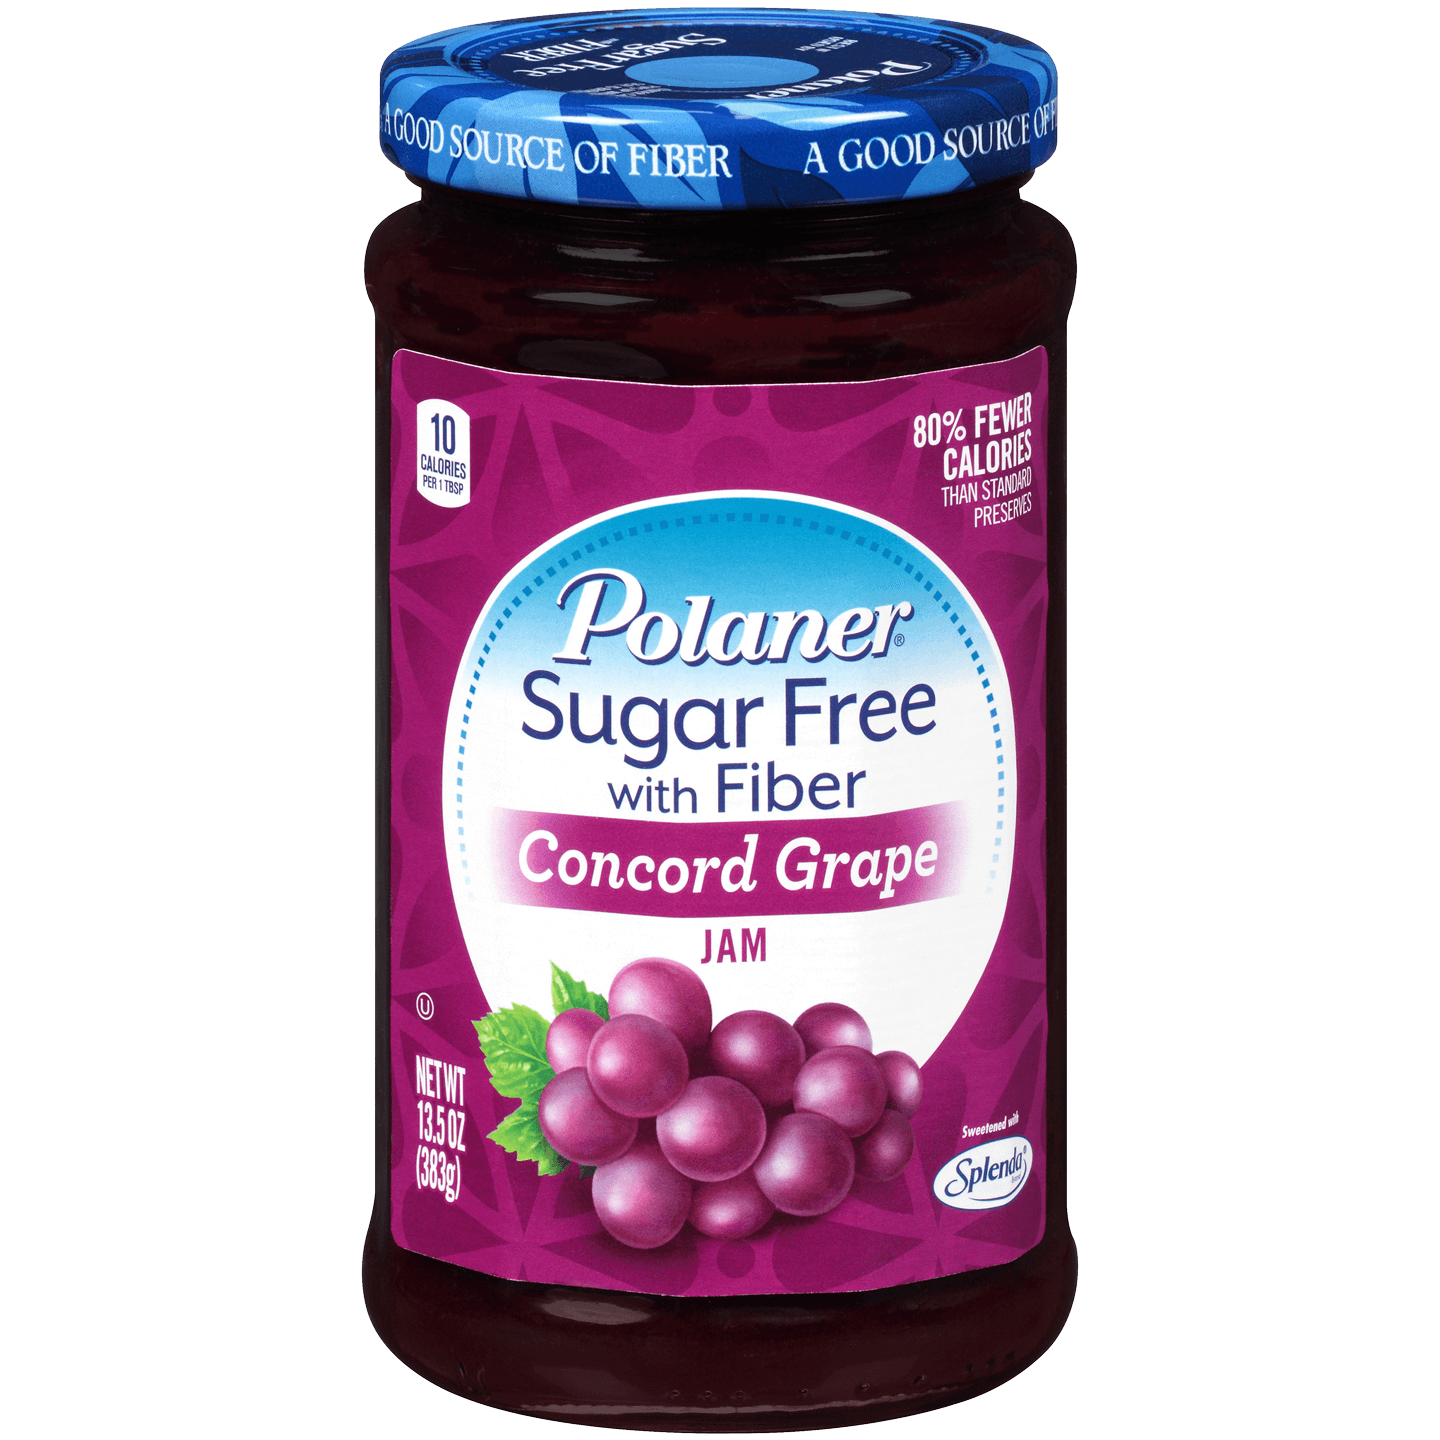 Sugar Free Concord Grape Jam with Fiber - Polaner SpreadsÂ®